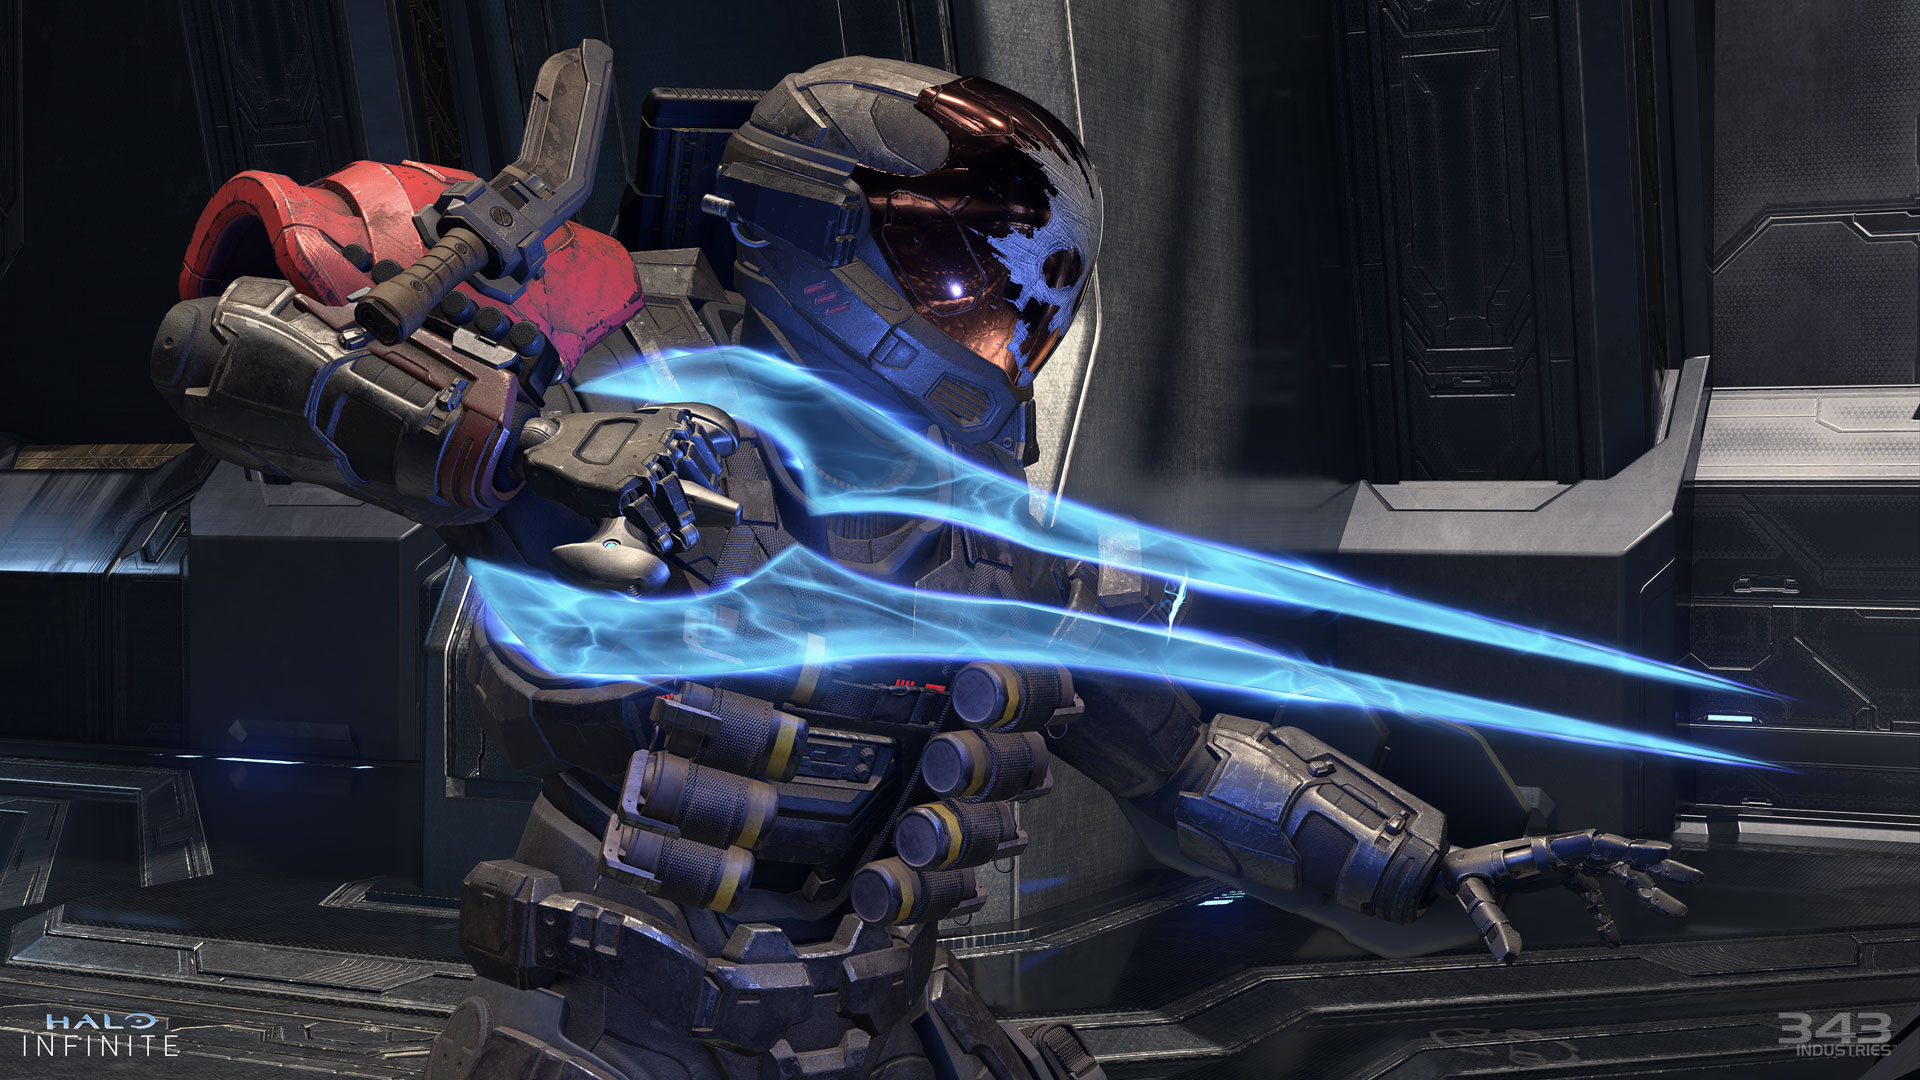 Snímek obrazovky ze hry Halo Infinite zobrazující boj se Spartanem